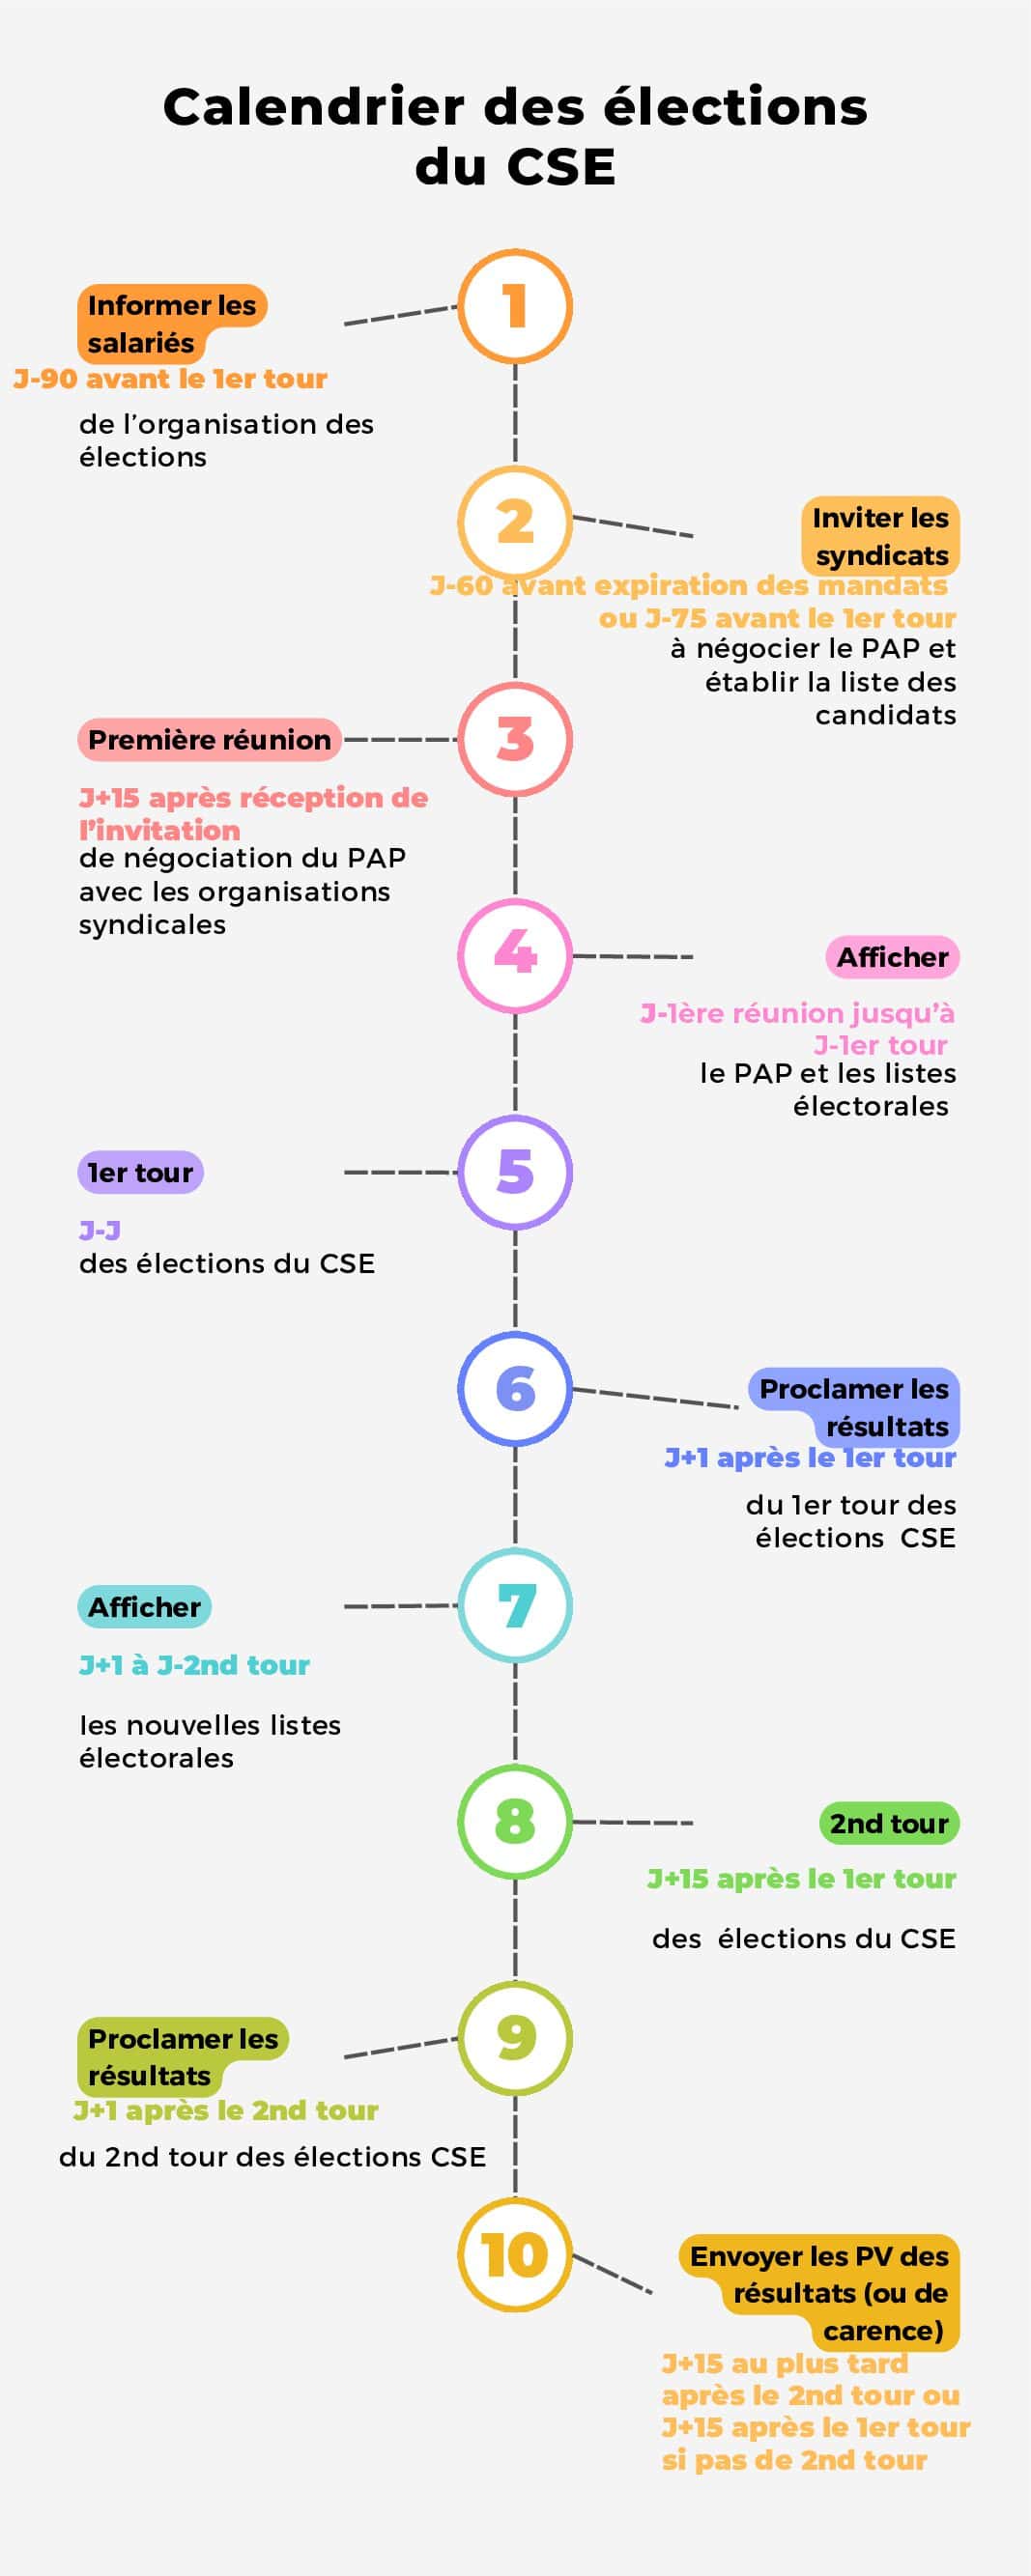 Infographie calendrier des élections CSE GUIDE.FR